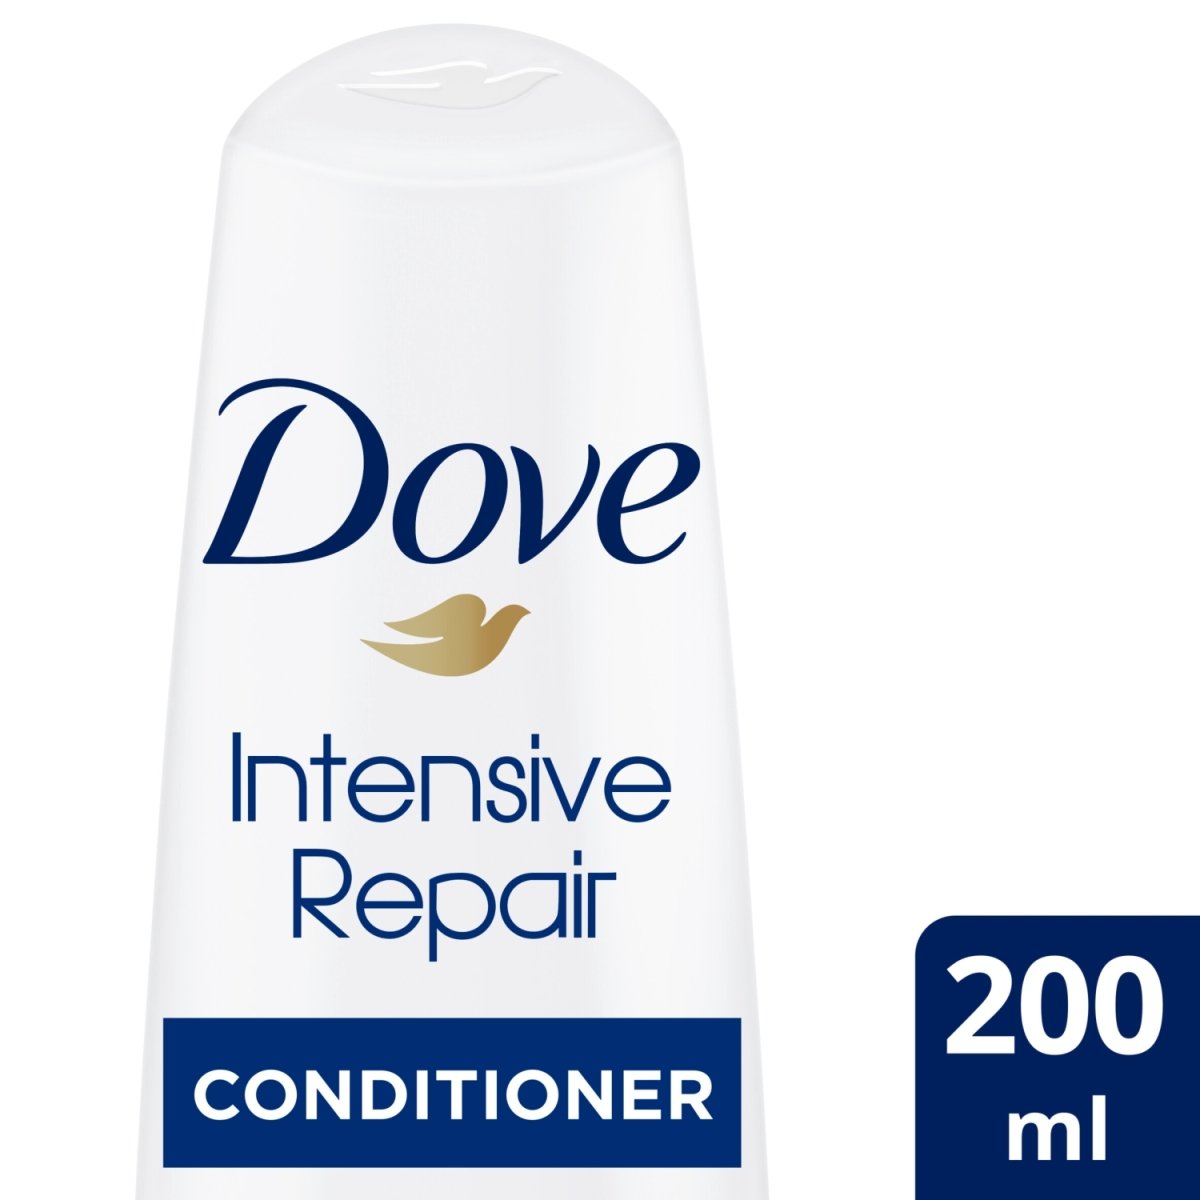 Dove 200ml Conditioner Intense Repair New - Intamarque - Wholesale 8718114627007